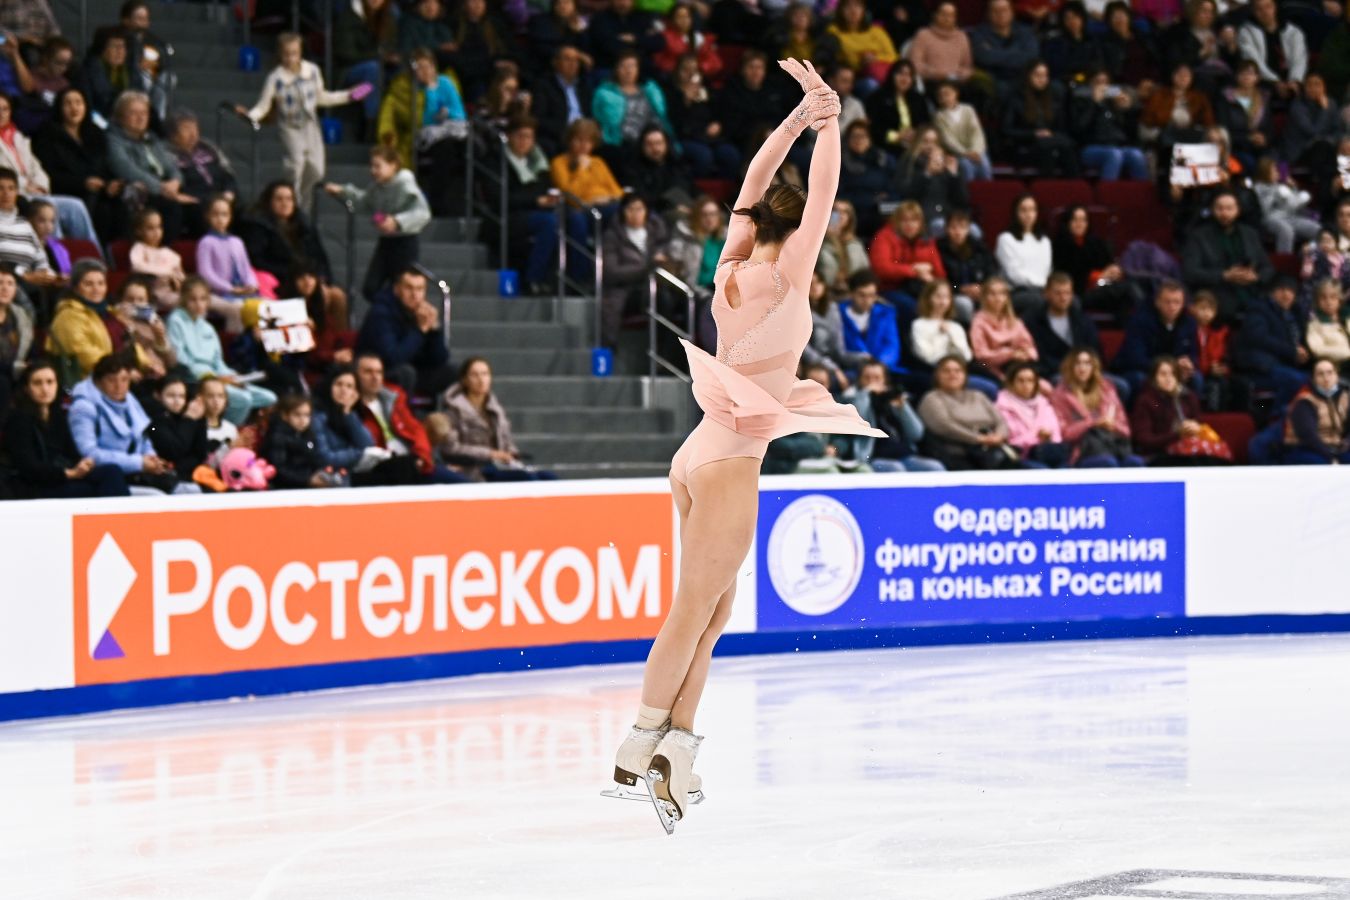 Команда Плющенко лидирует по итогам второго раунда на ЧР по прыжкам